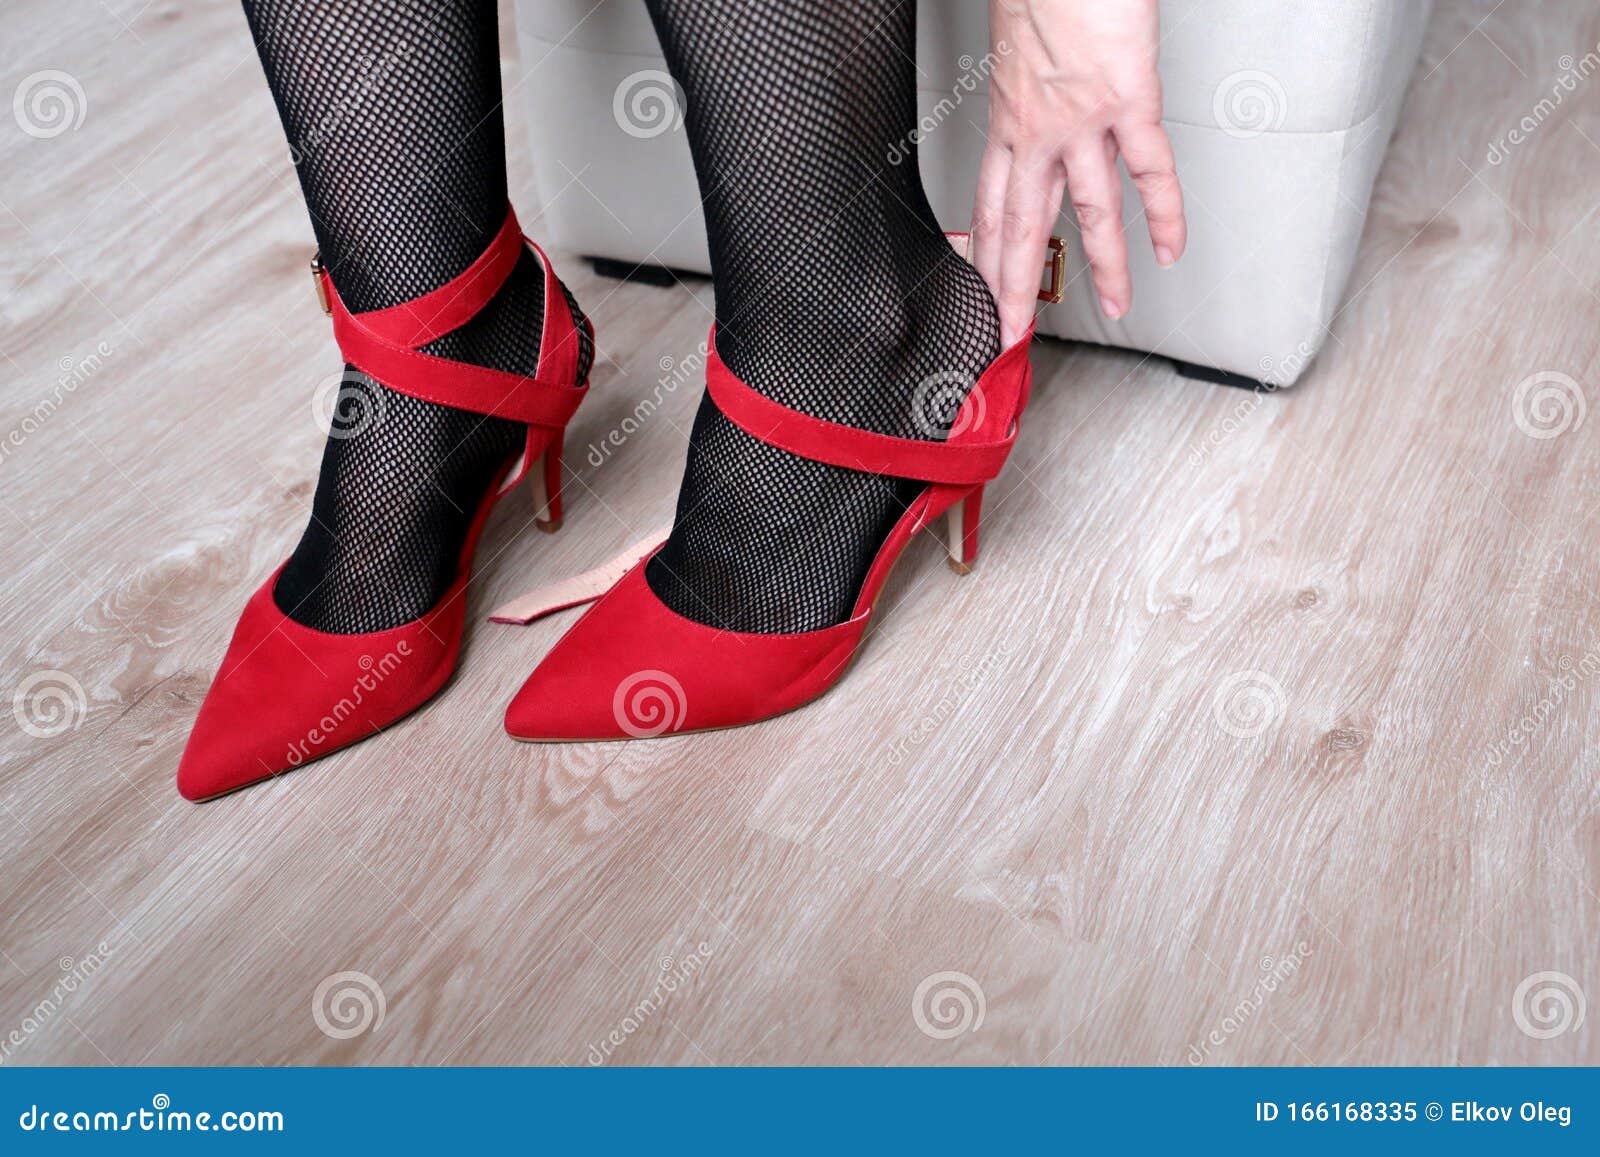 Γυναίκα με μαύρες κάλτσες που δοκιμάζει κόκκινα παπούτσια με ψηλά τακούνια  Στοκ Εικόνα - εικόνα από bodybuilders, bedroll: 166168335